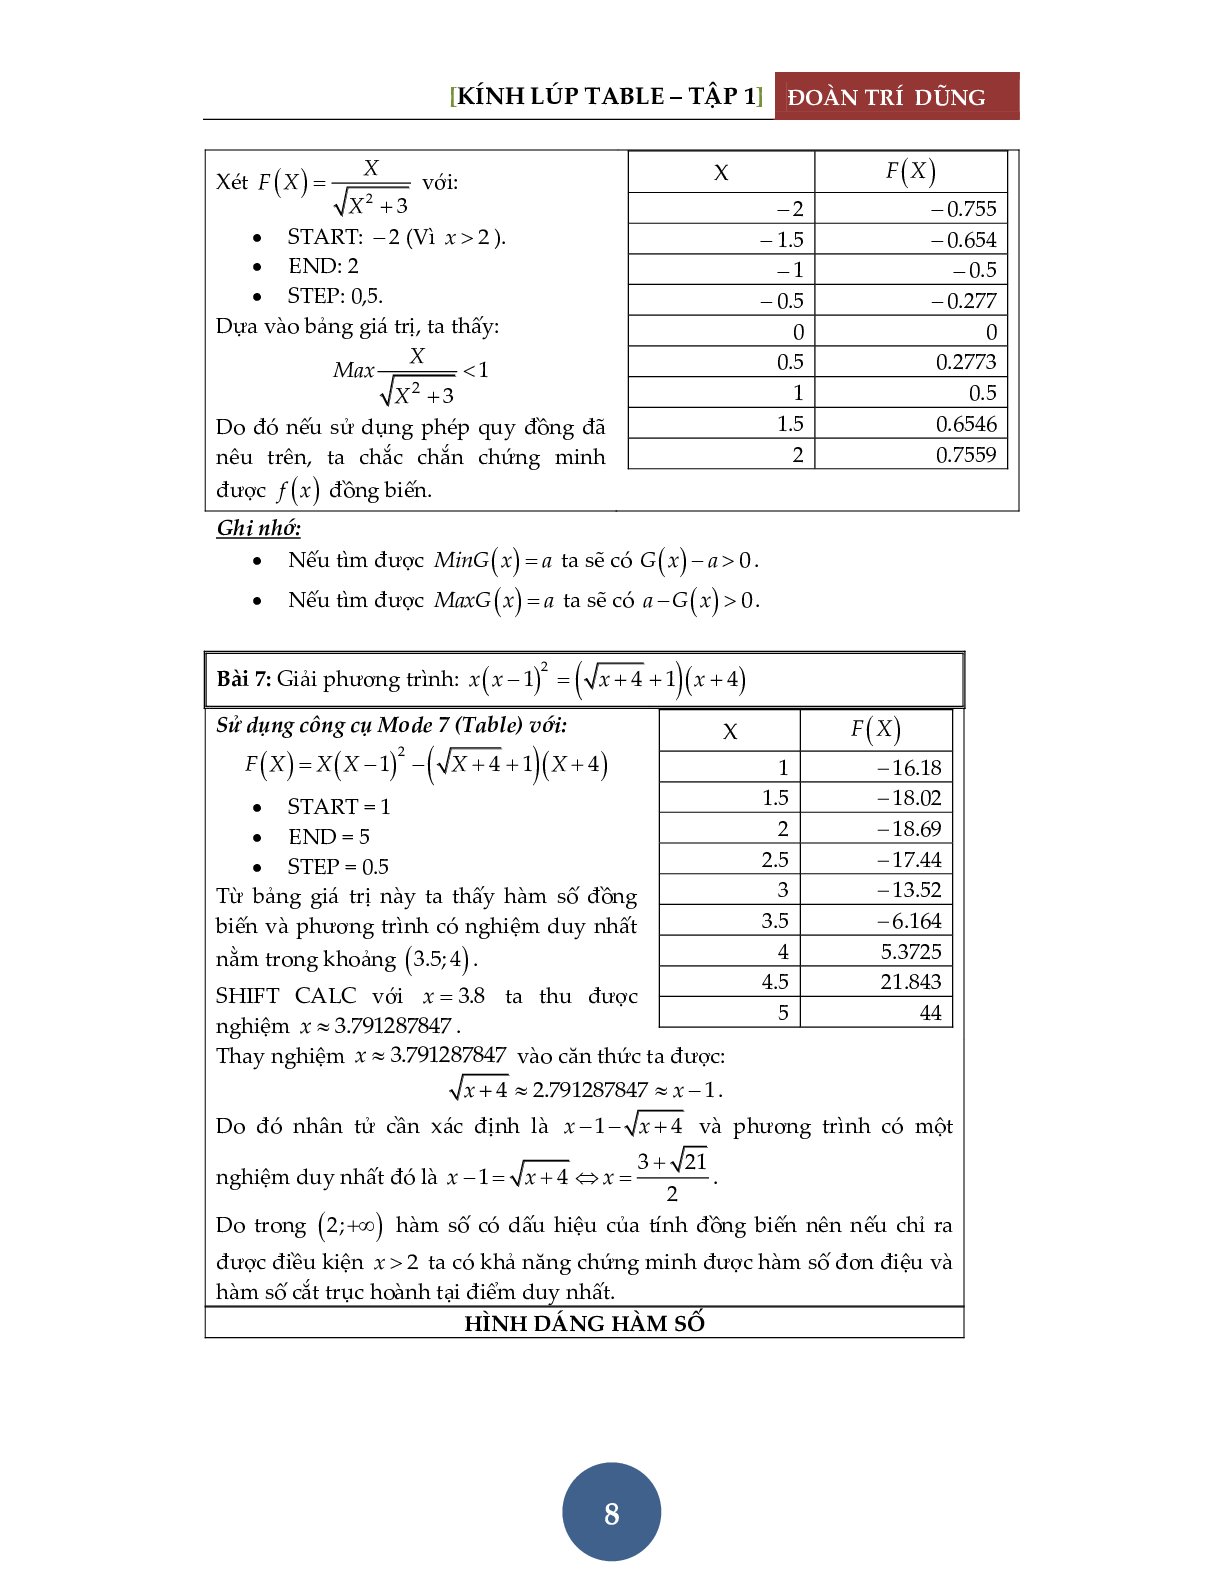 Giải phương trình bằng máy tính Casio – Đánh giá hàm đơn điệu (trang 9)